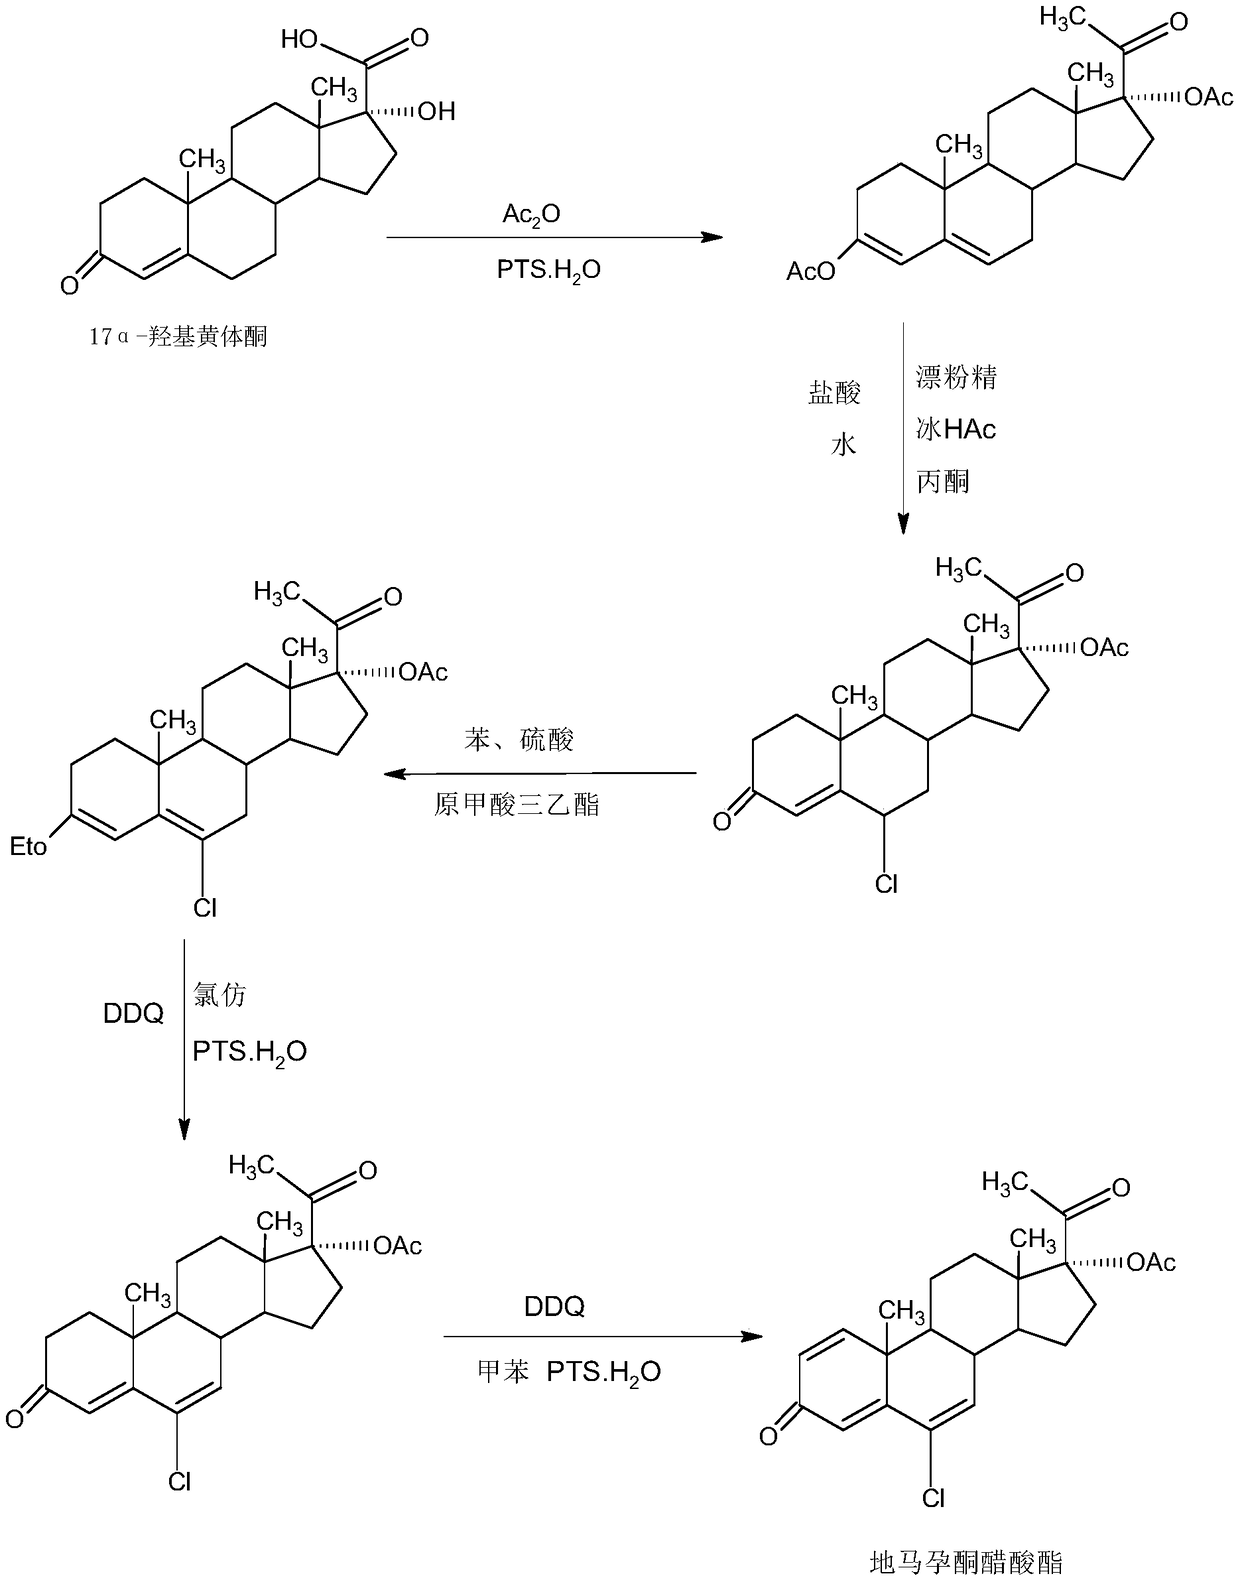 Method for preparing delmadinone acetate product